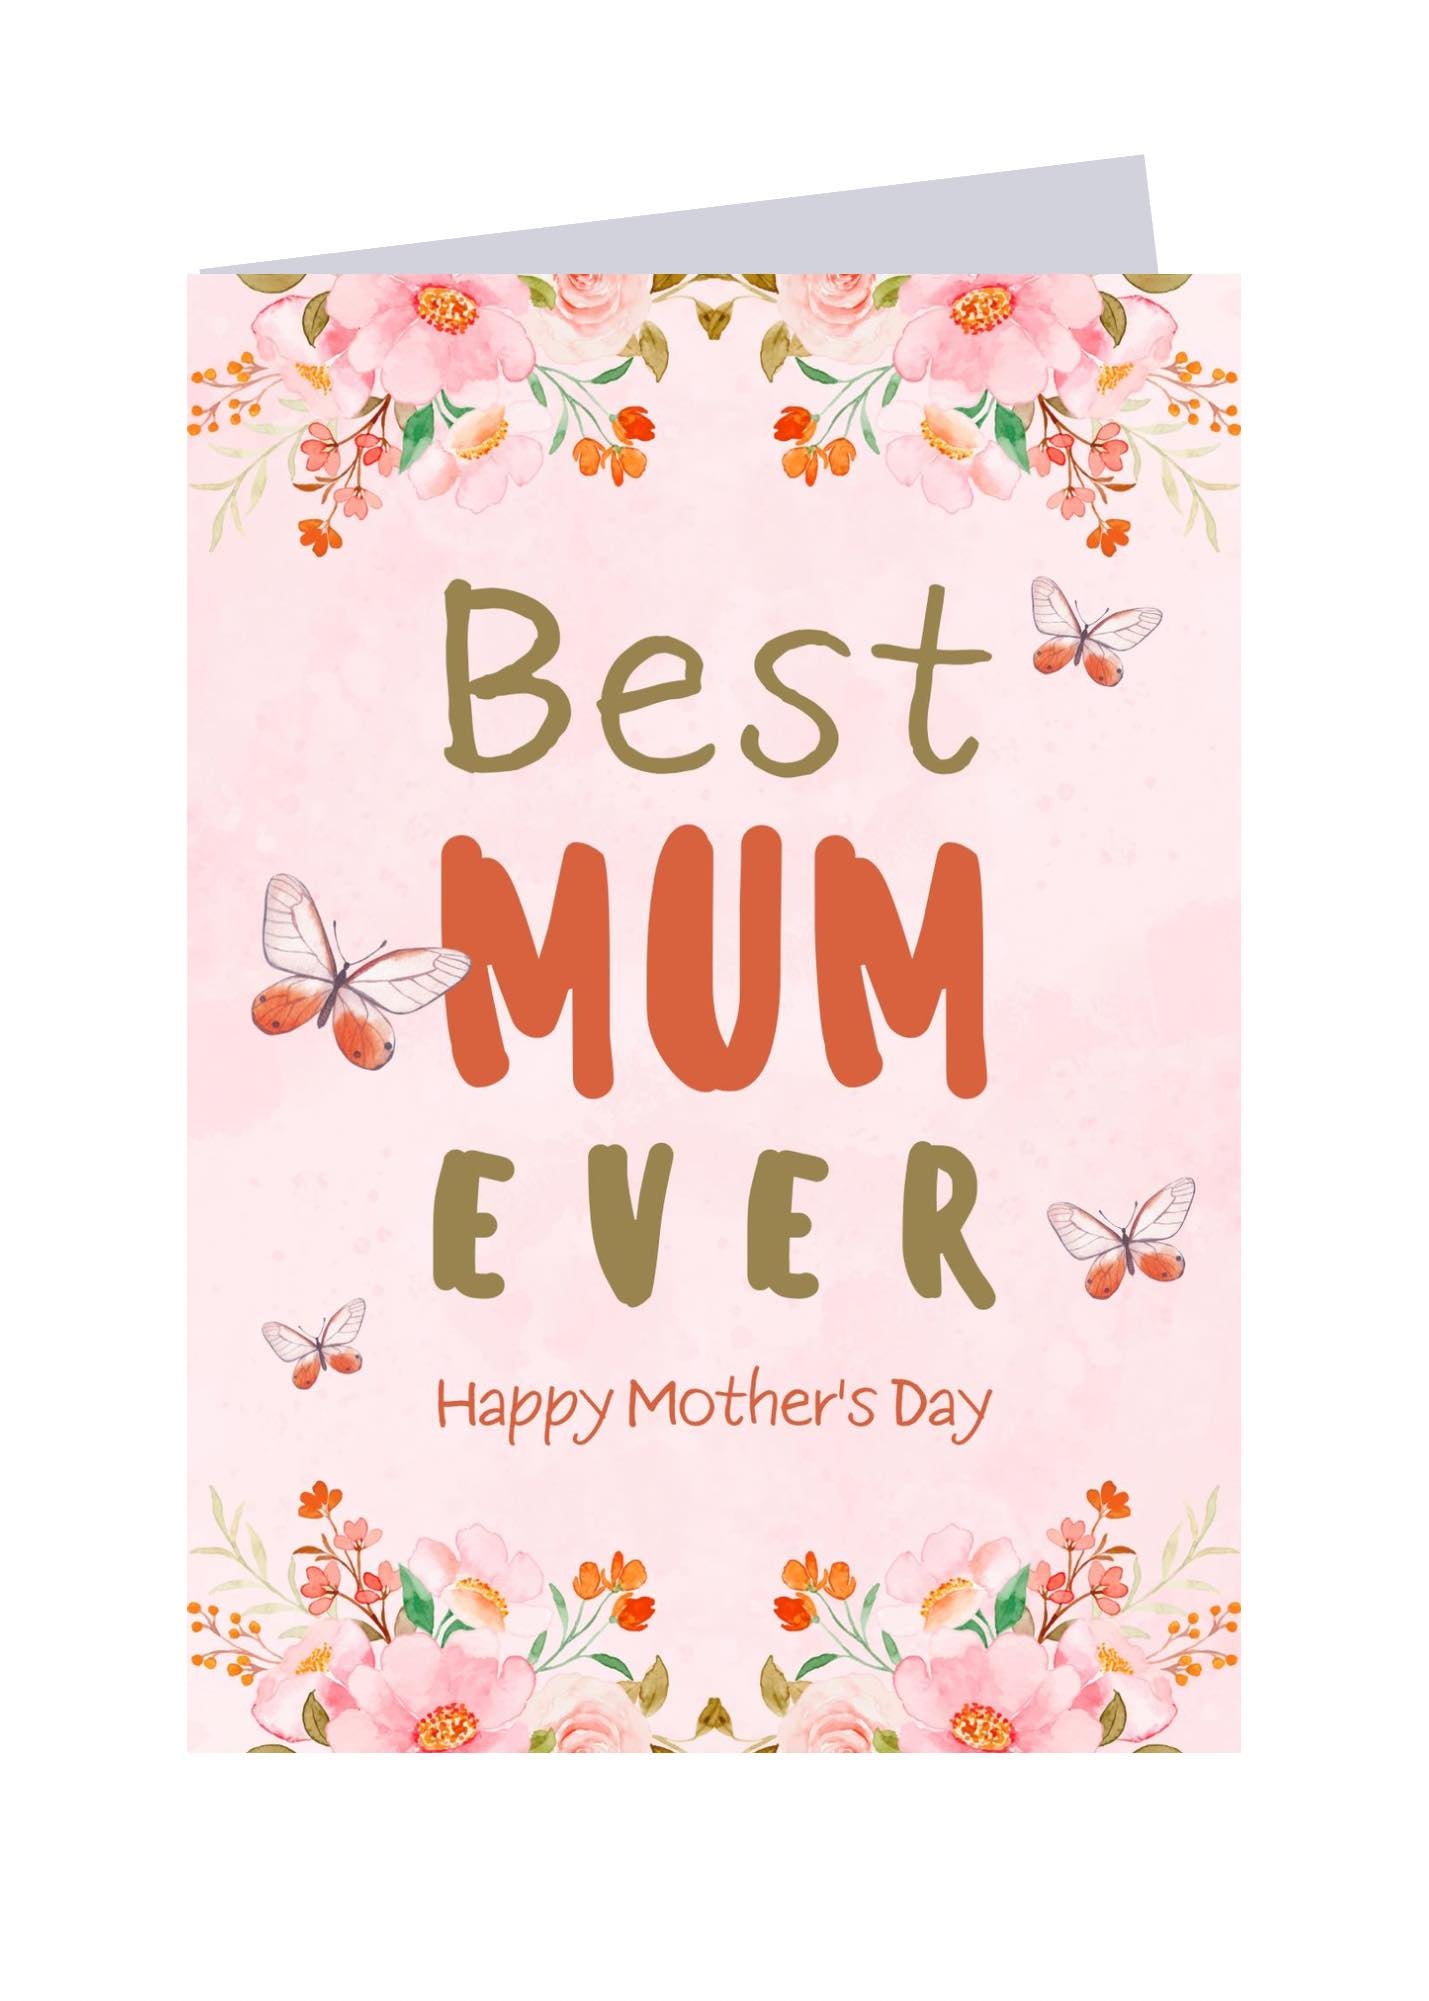 Best Mum Ever! - Sweet Card